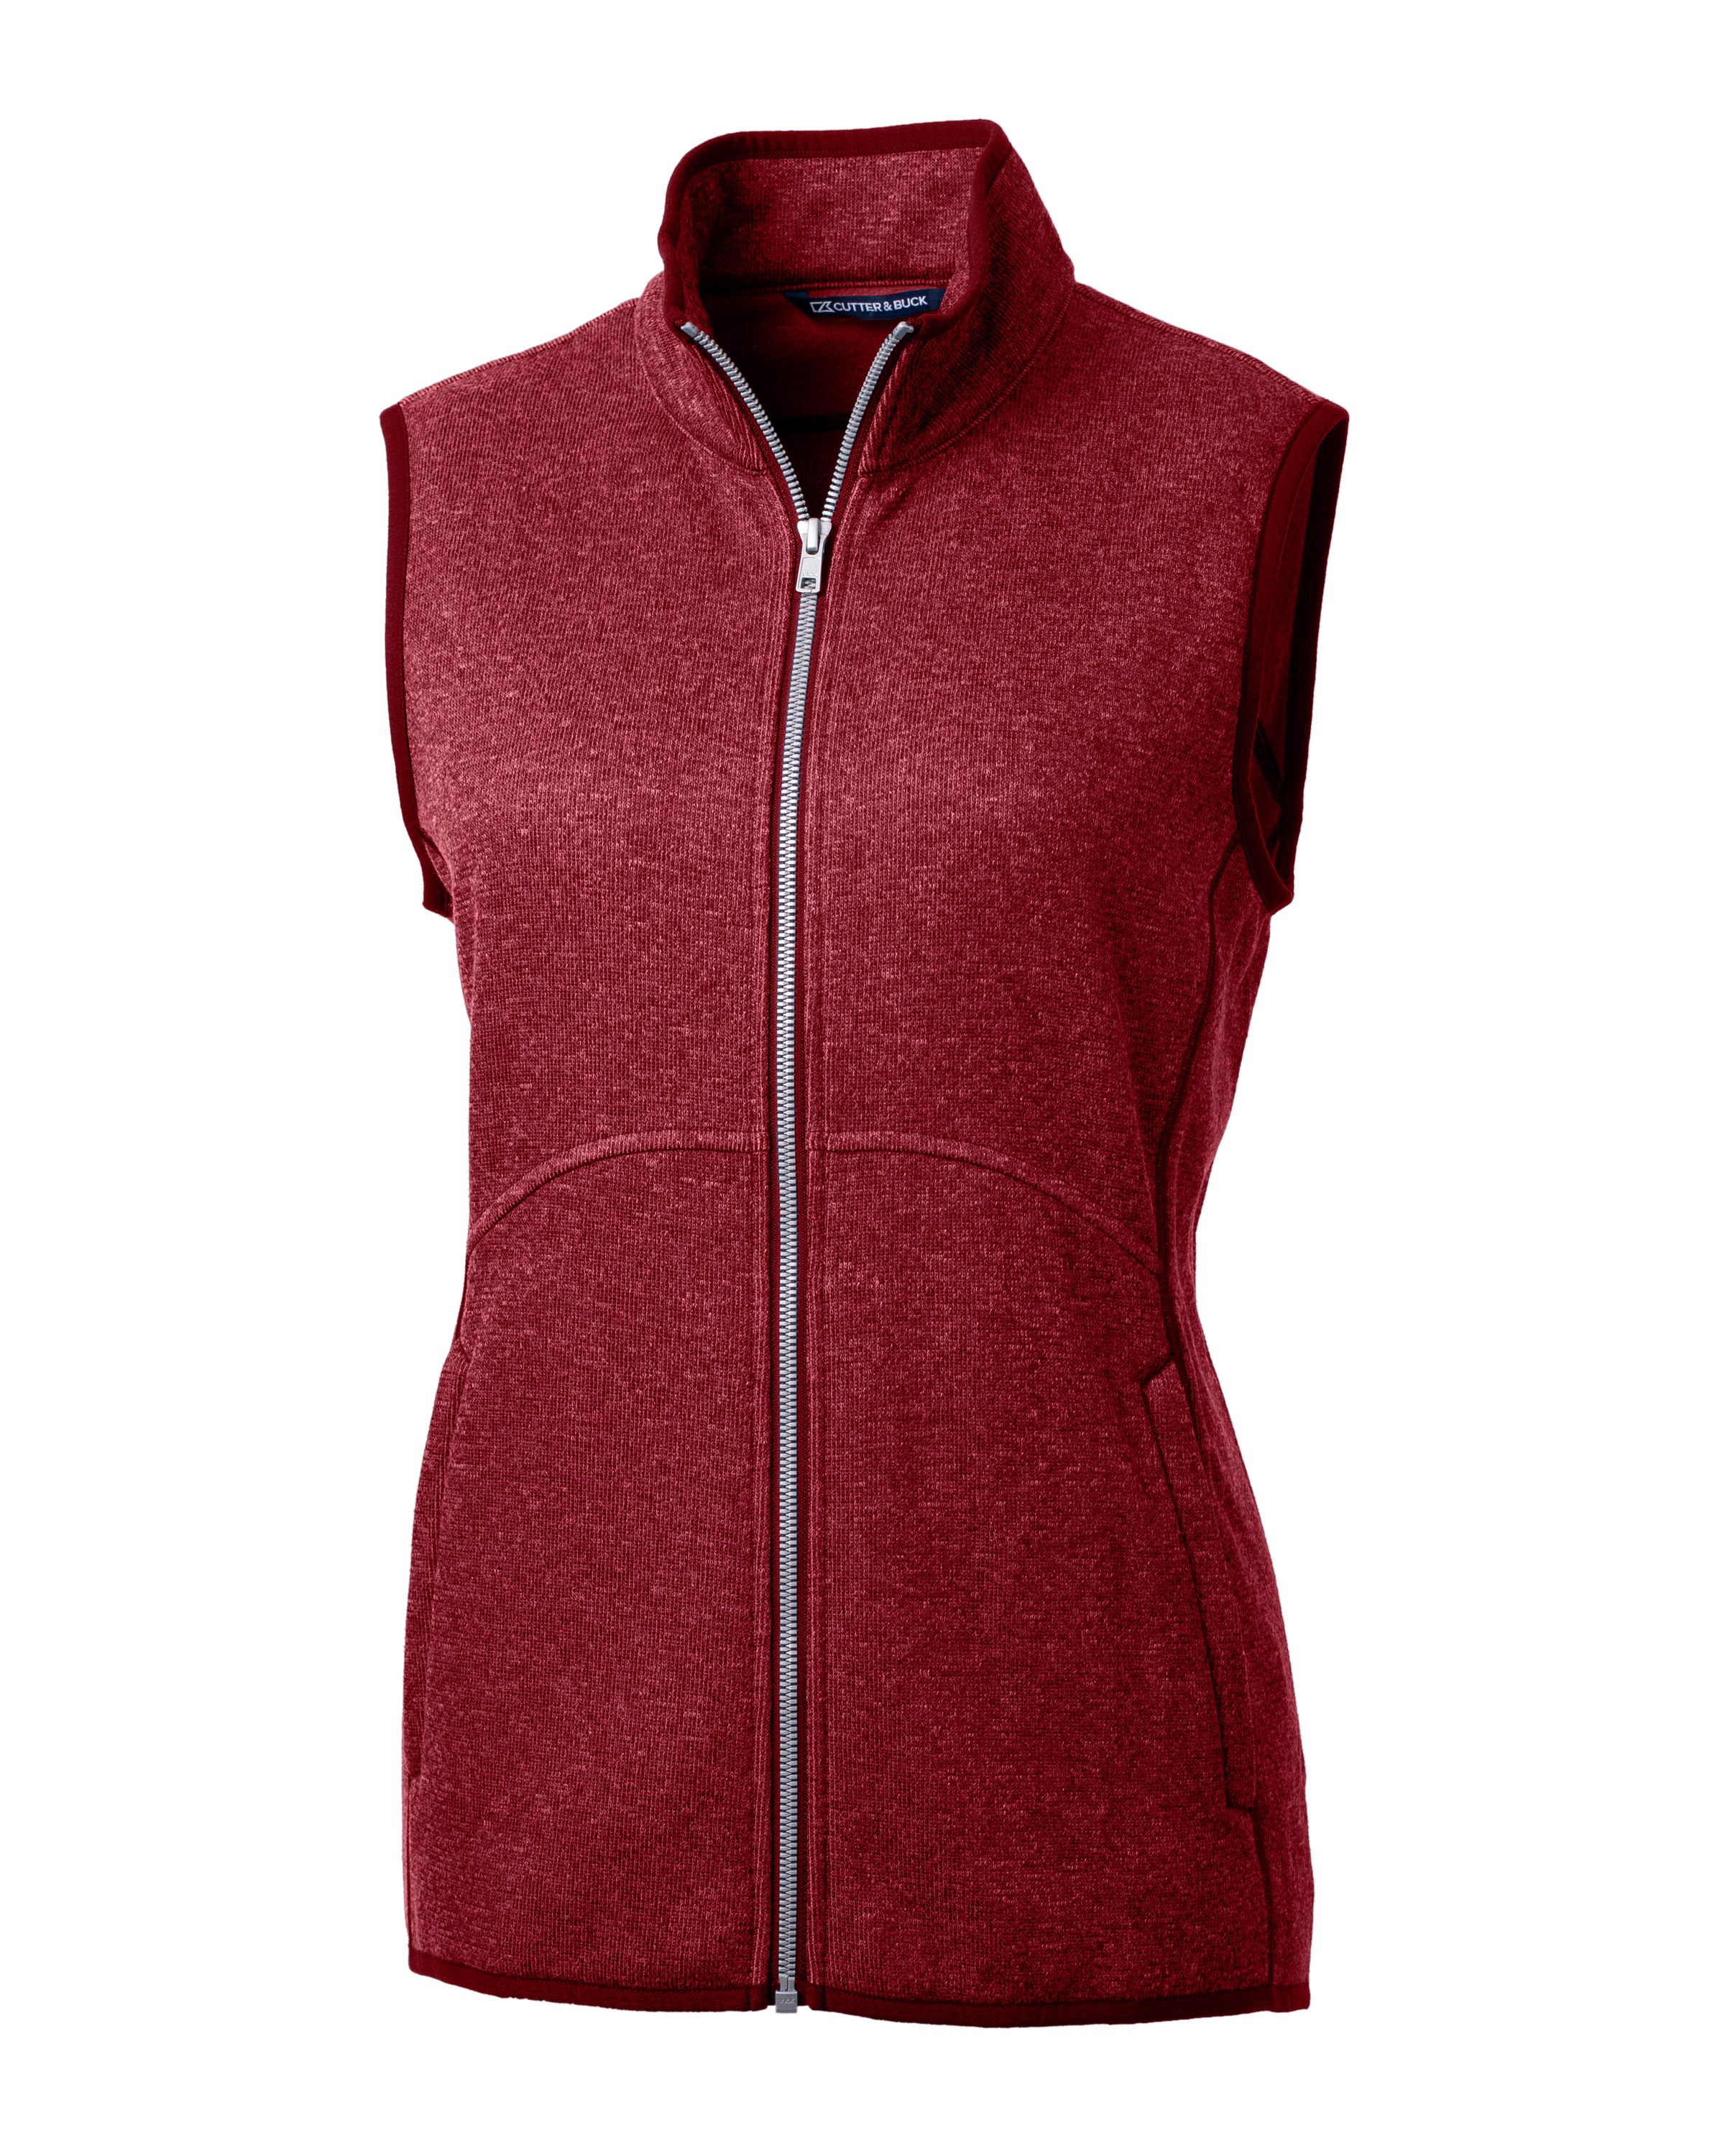 CUTTER & BUCK LCO00058 - Women's Mainsail Basic Sweater-Knit Full Zip Vest